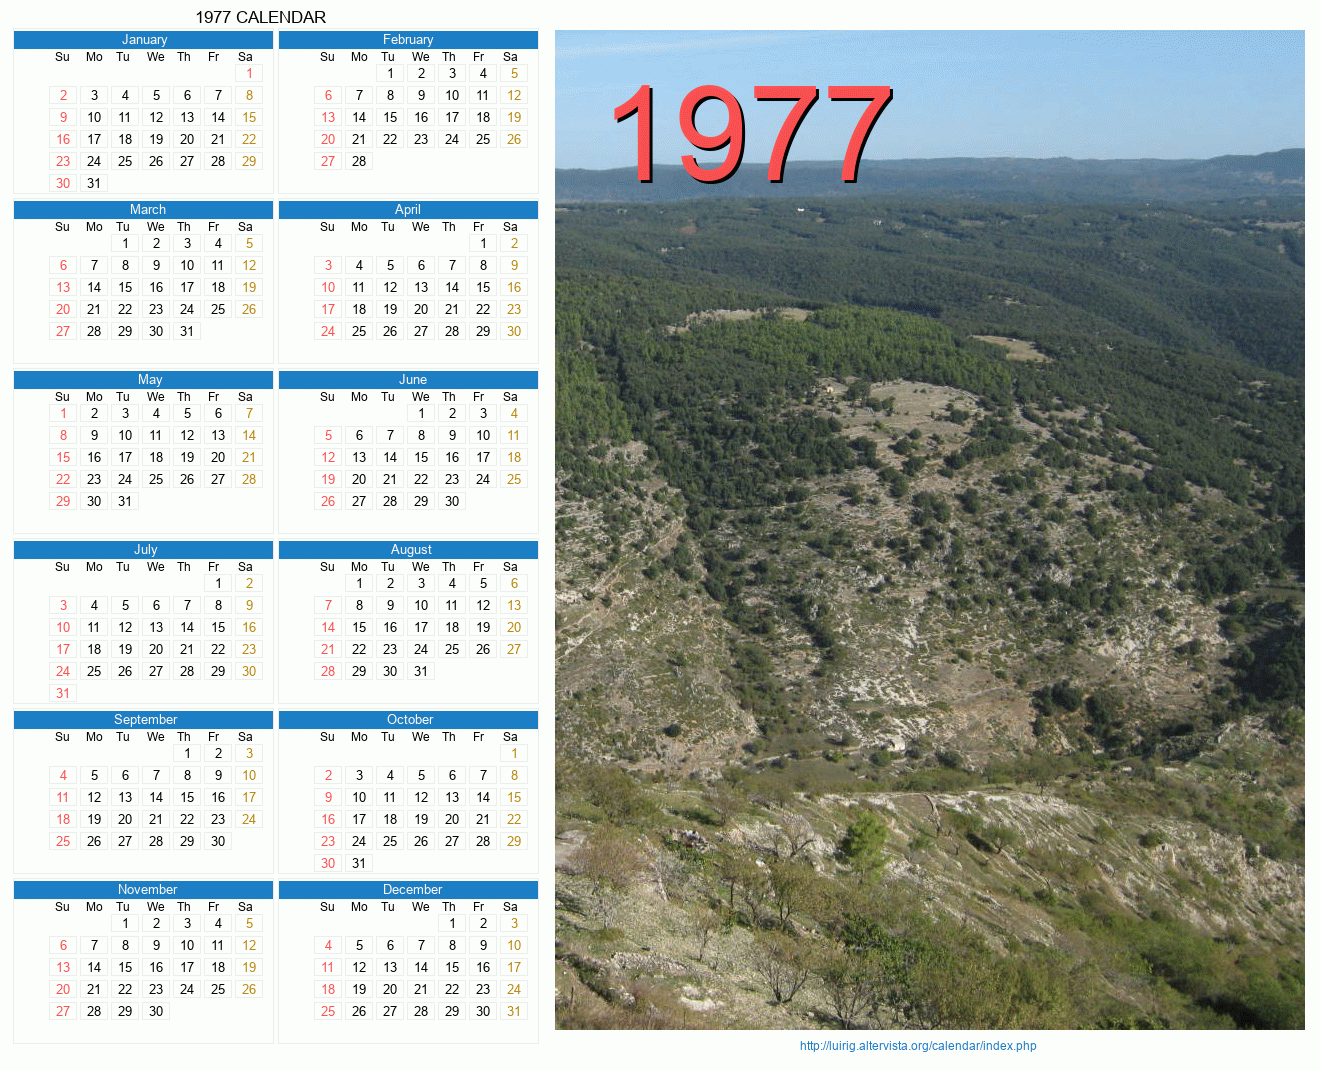 1977 Calendar Jahreskalender fuer das jahr 1977 auch zum ausdrucken und einbinden in die eigene seite. luirig altervista org